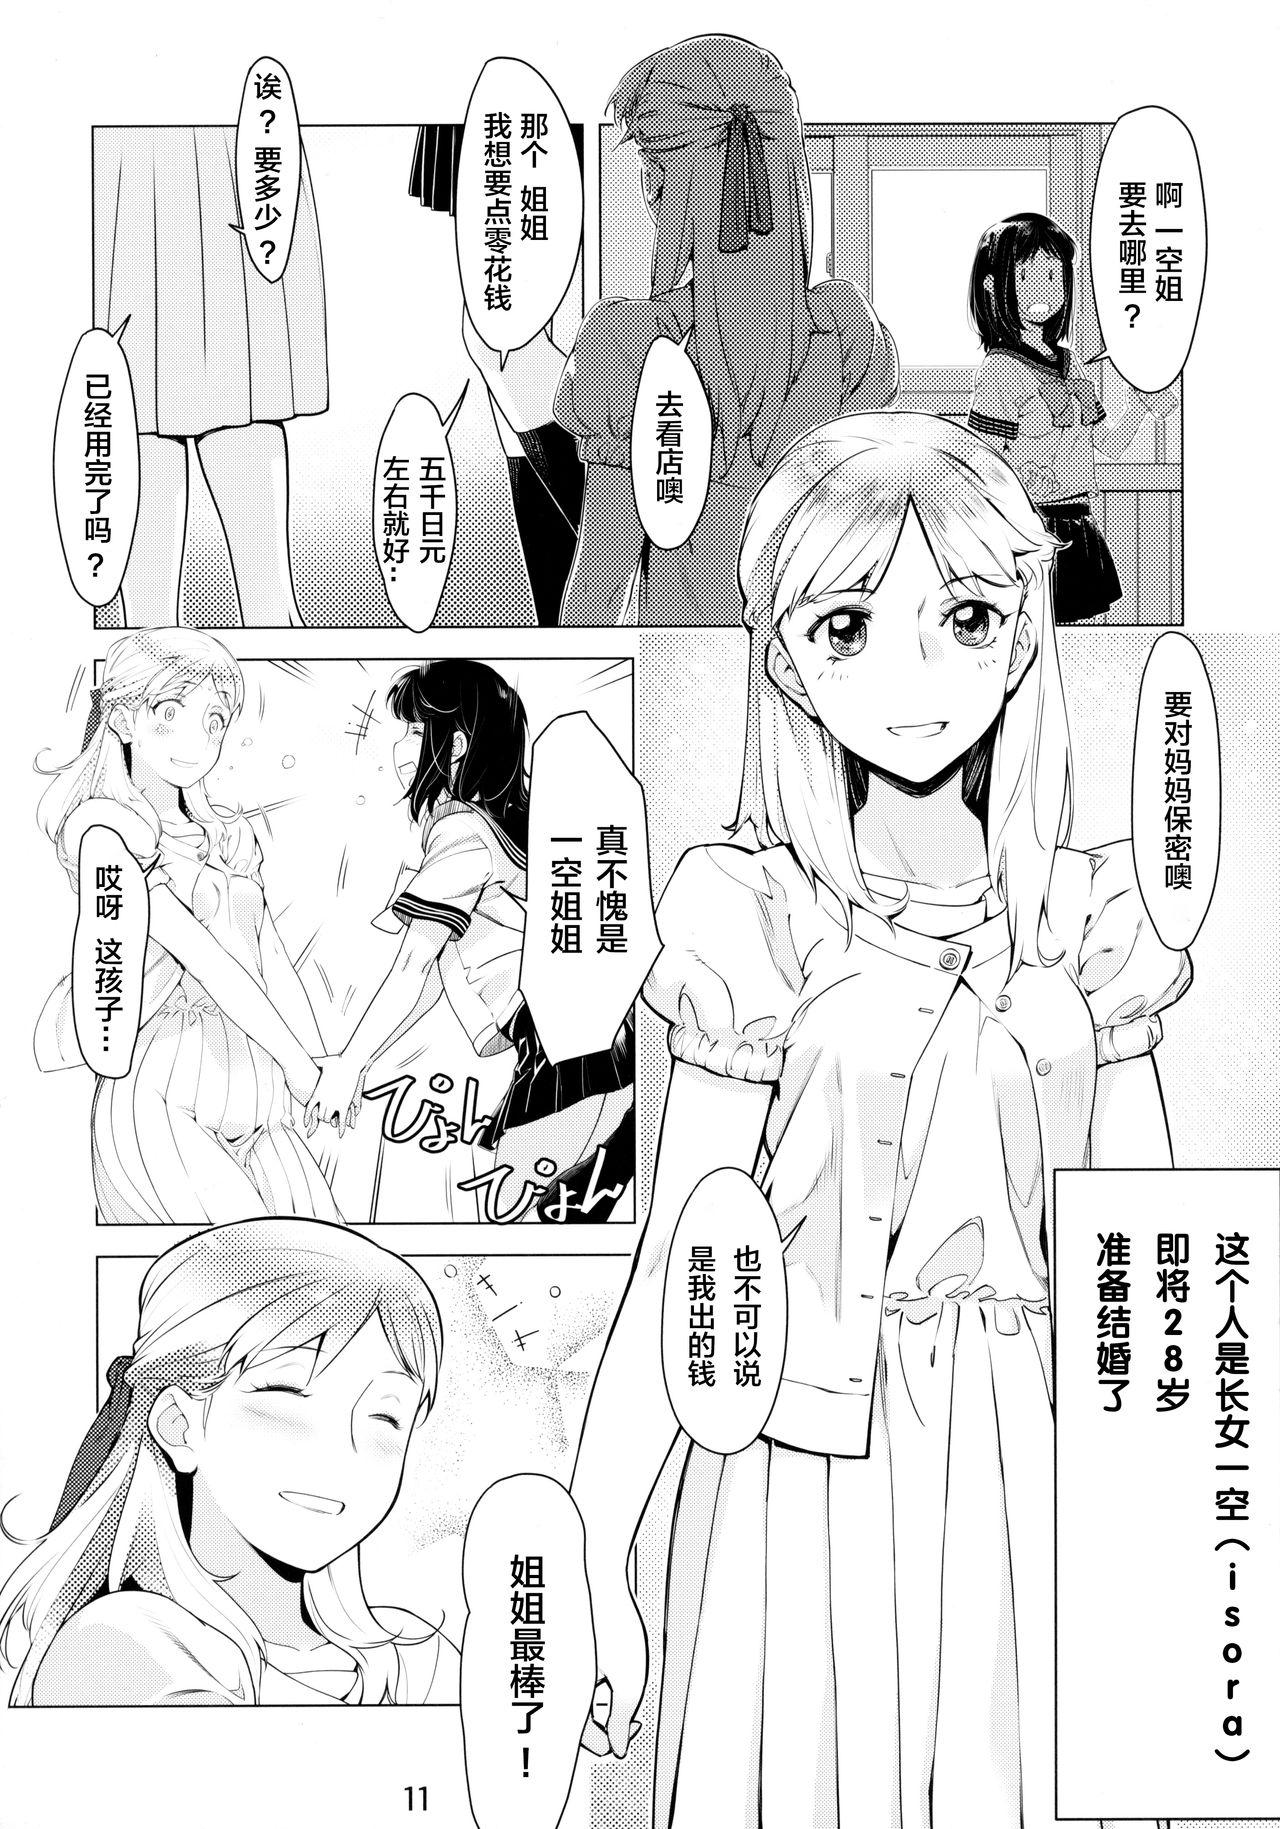 Messy Otonano Omochiya 6 Kan - Original Transvestite - Page 11